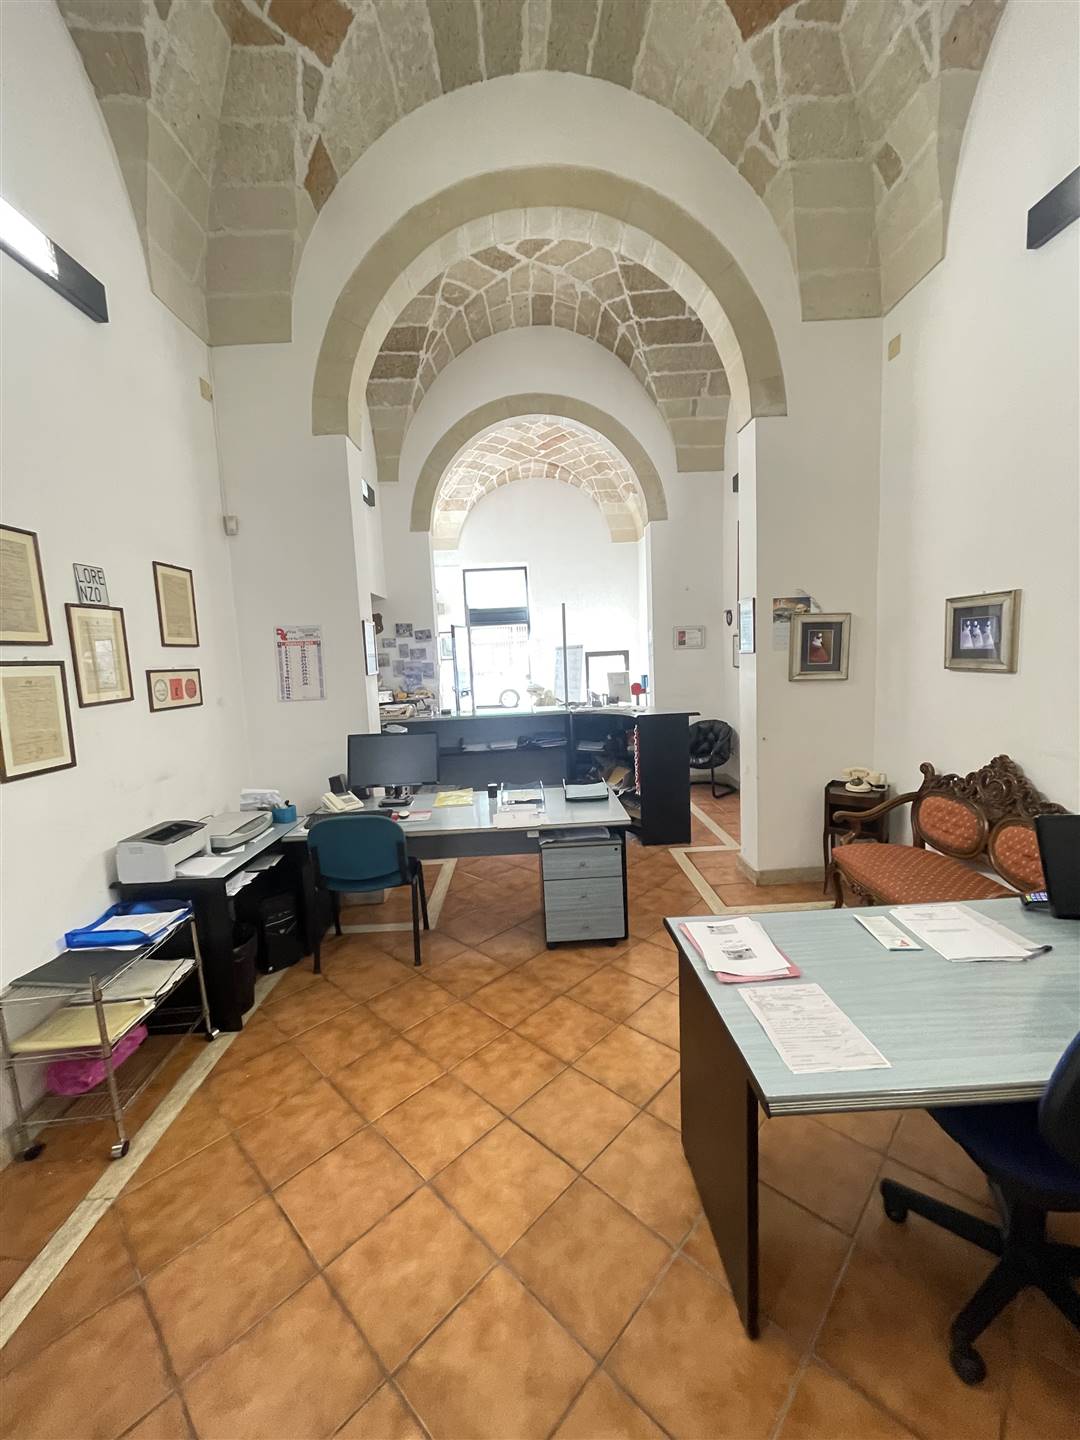 In palazzotto storico con la tipicità del barocco leccese, proponiamo ampio ufficio su due livelli con doppio ingresso. L'ampia superficie a livello 